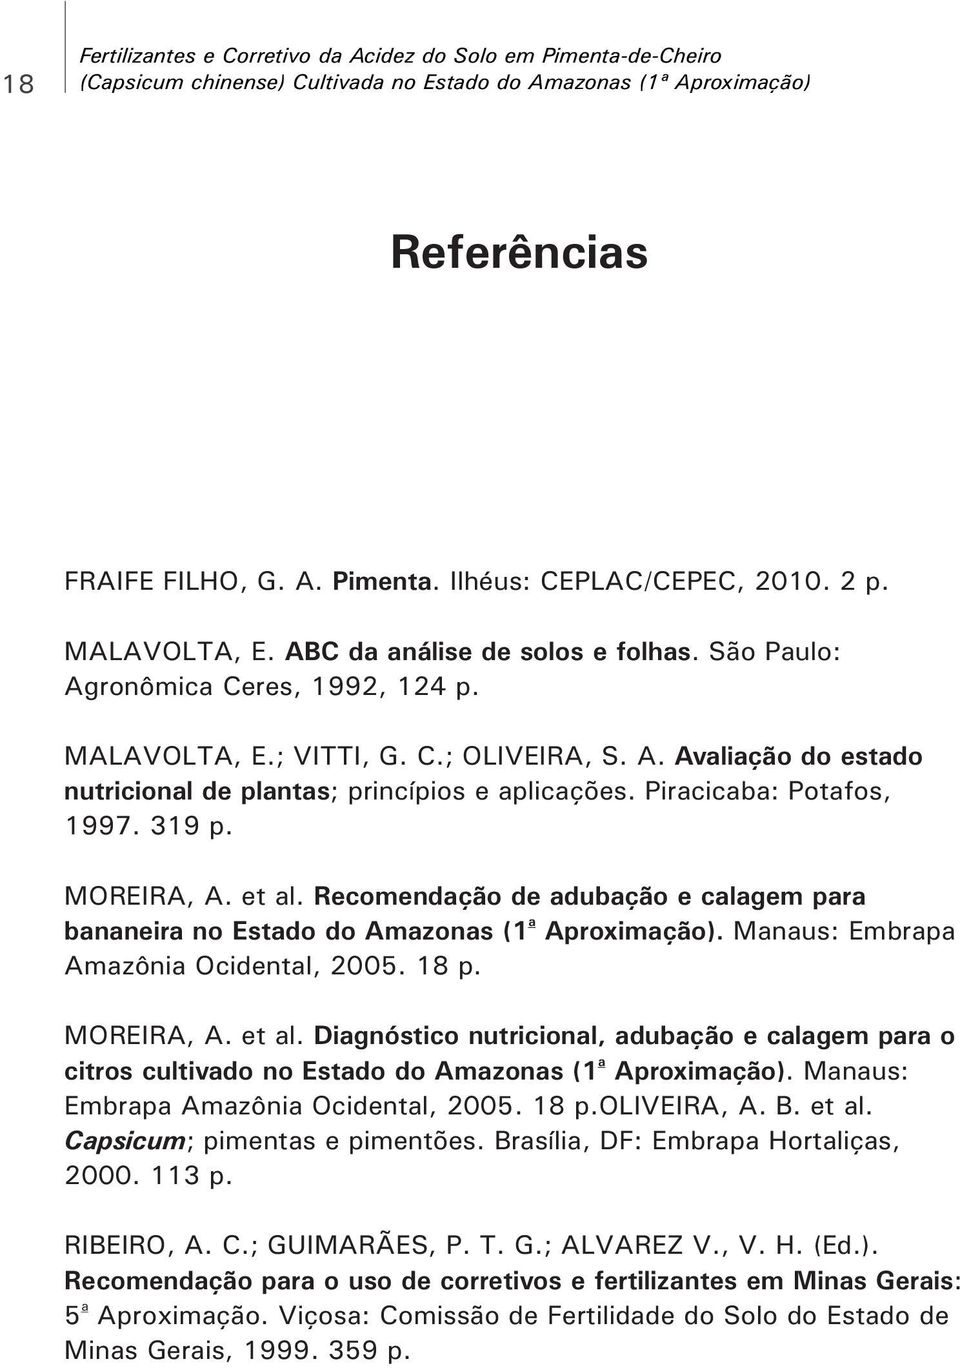 Piracicaba: Potafos, 1997. 319 p. MOREIRA, A. et al. Recomendação de adubação e calagem para a bananeira no Estado do Amazonas (1 Aproximação). Manaus: Embrapa Amazônia Ocidental, 2005. 18 p.